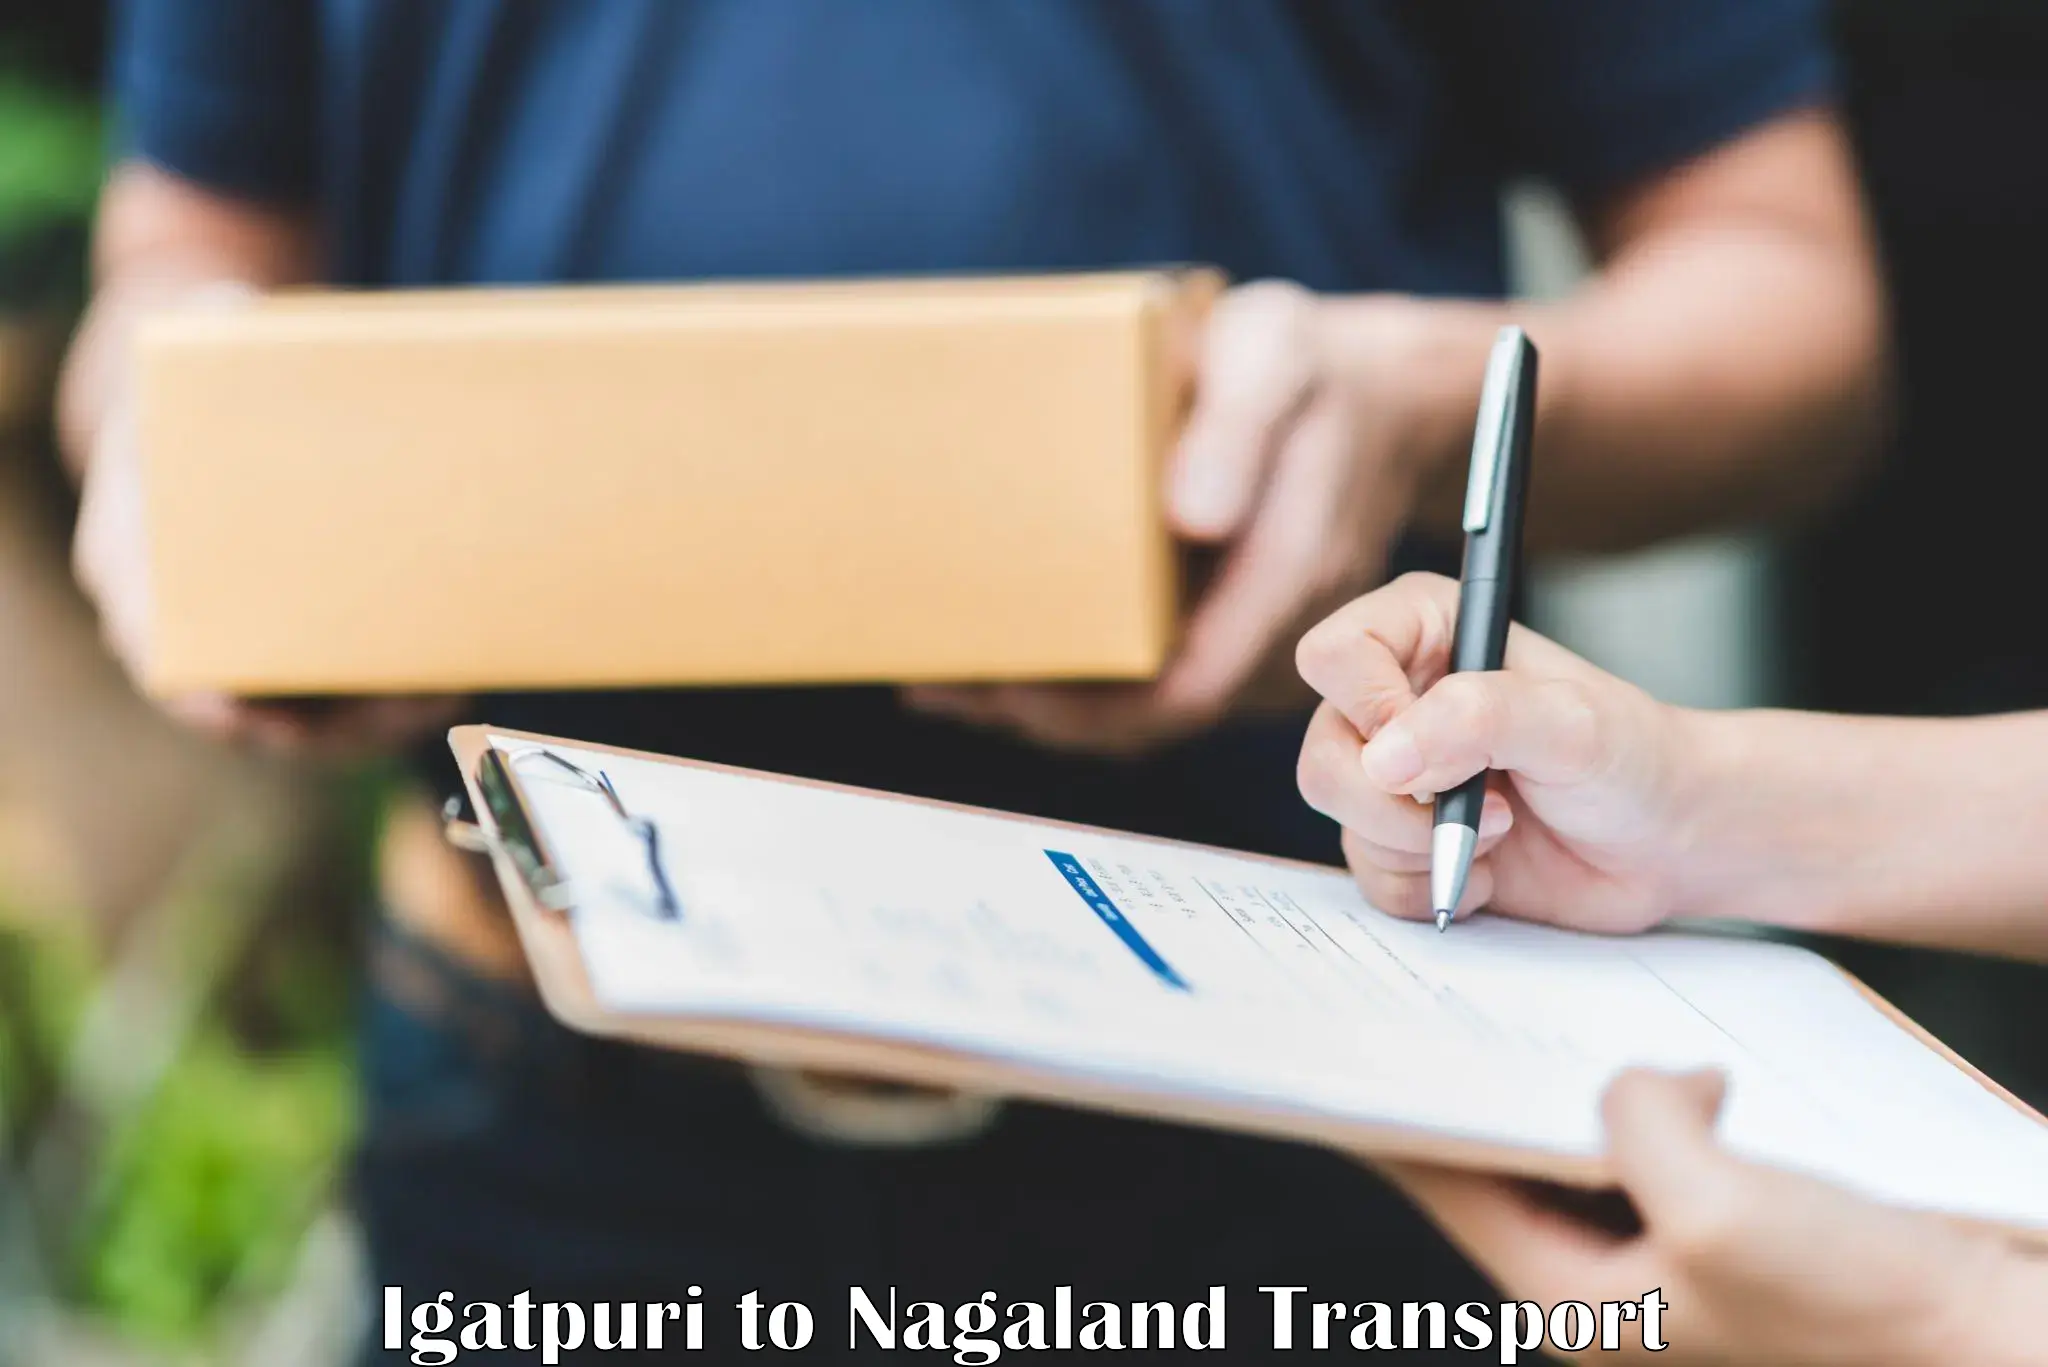 Intercity transport in Igatpuri to Nagaland